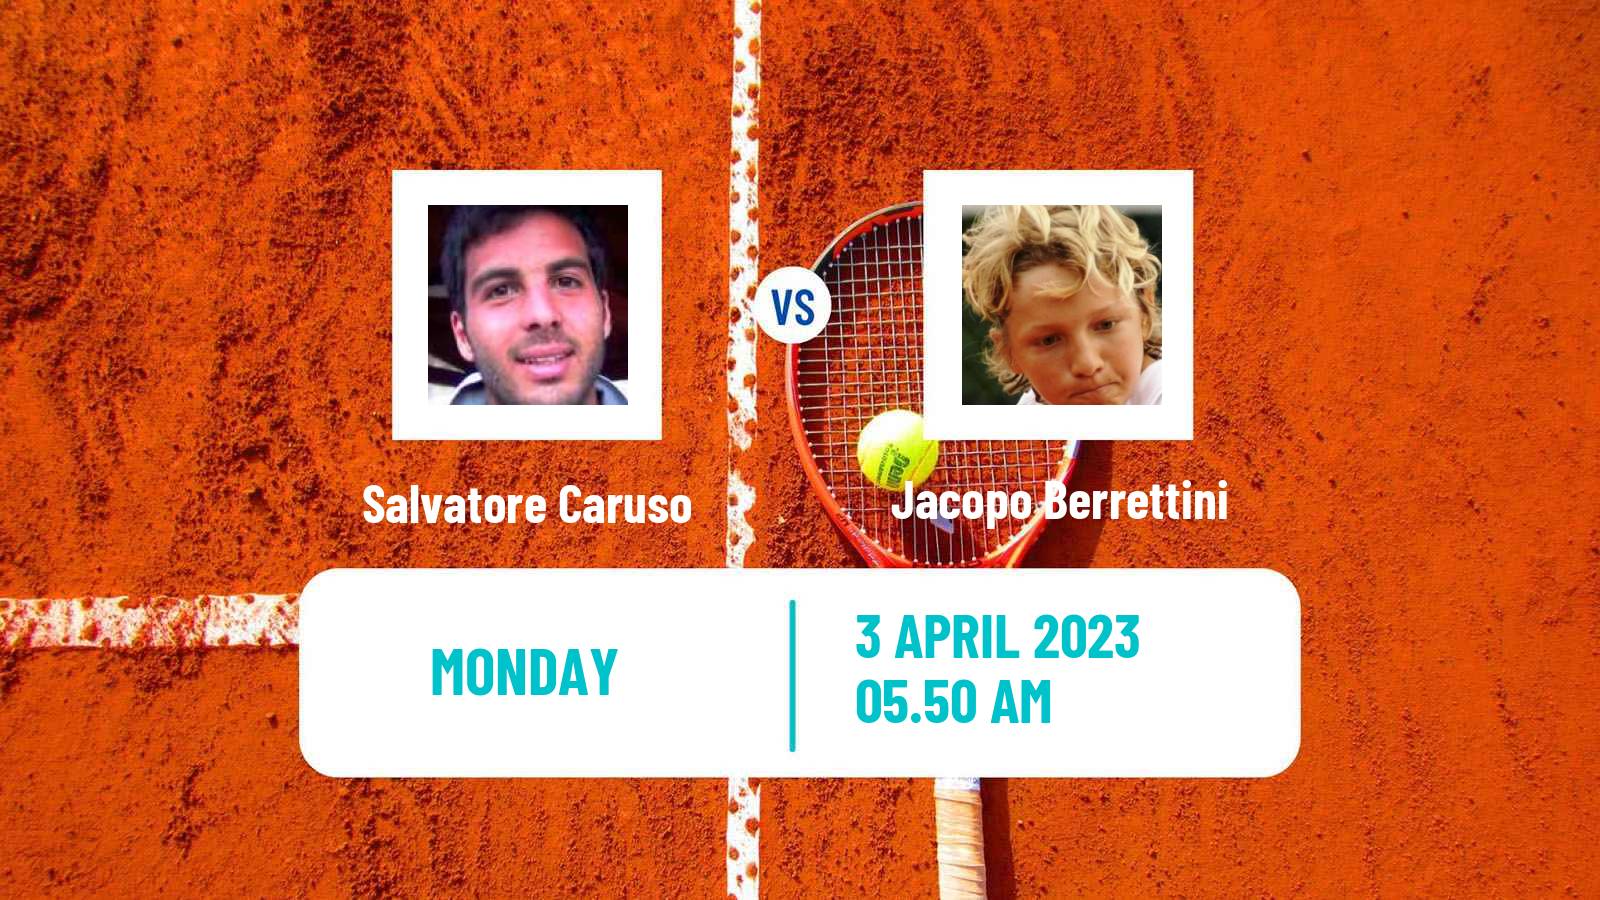 Tennis ATP Challenger Salvatore Caruso - Jacopo Berrettini